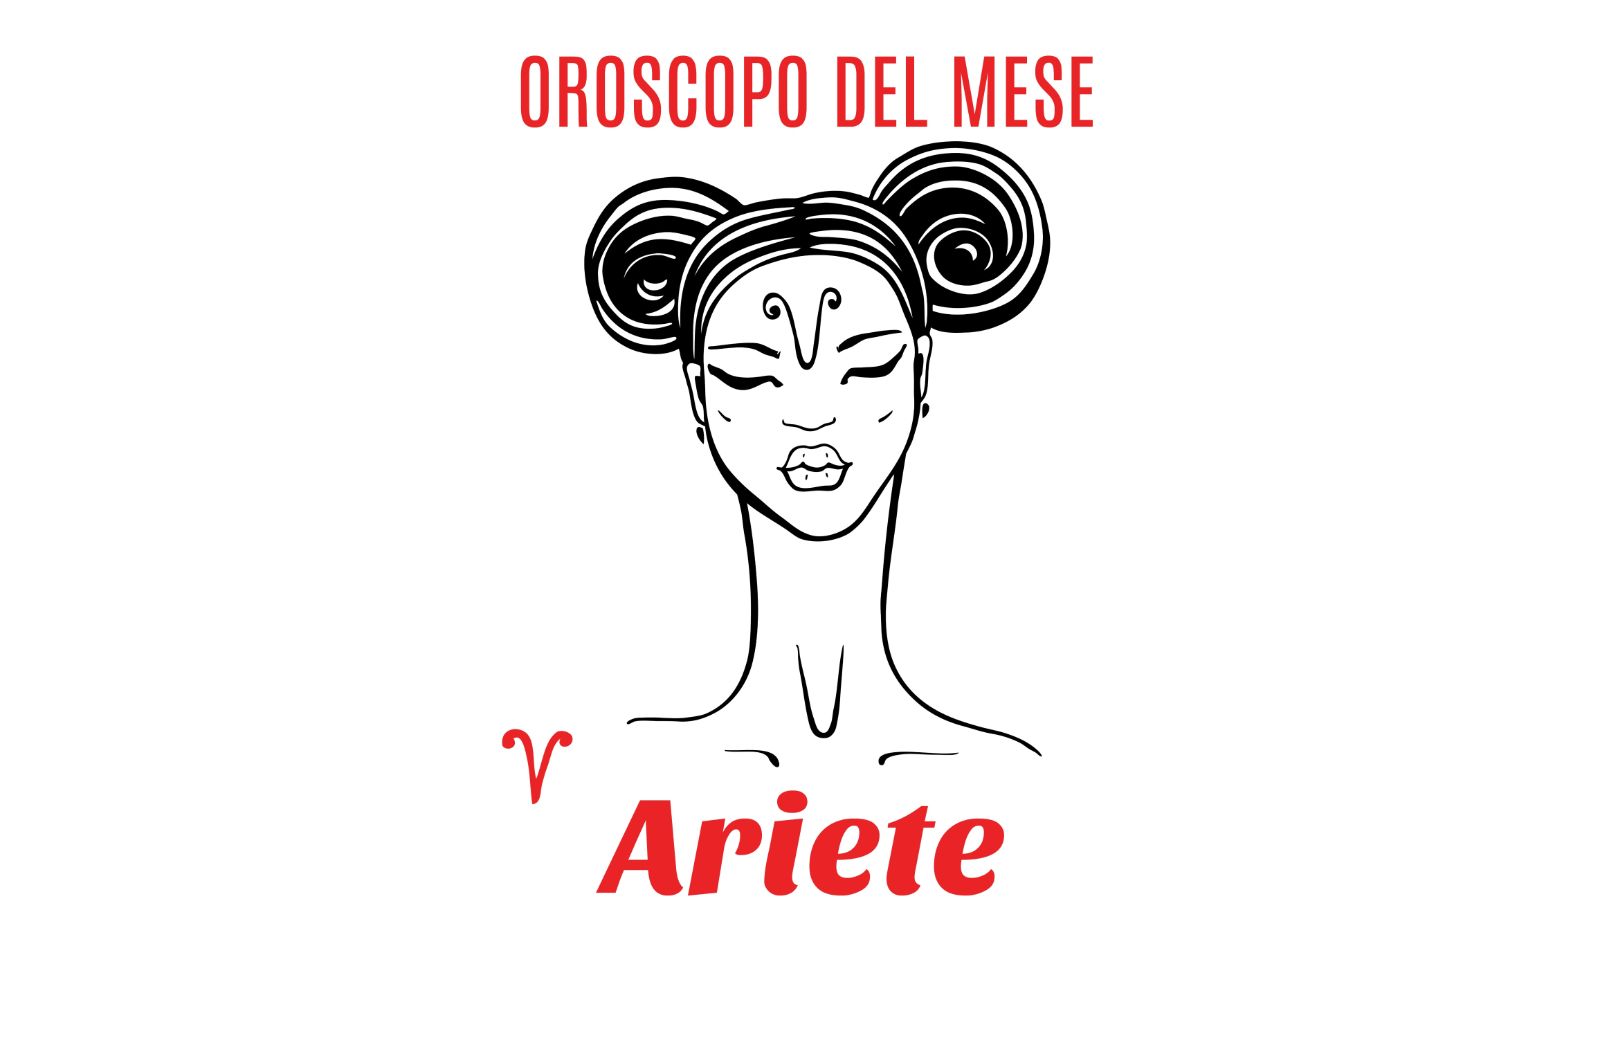 Oroscopo del mese: Ariete - aprile 2020